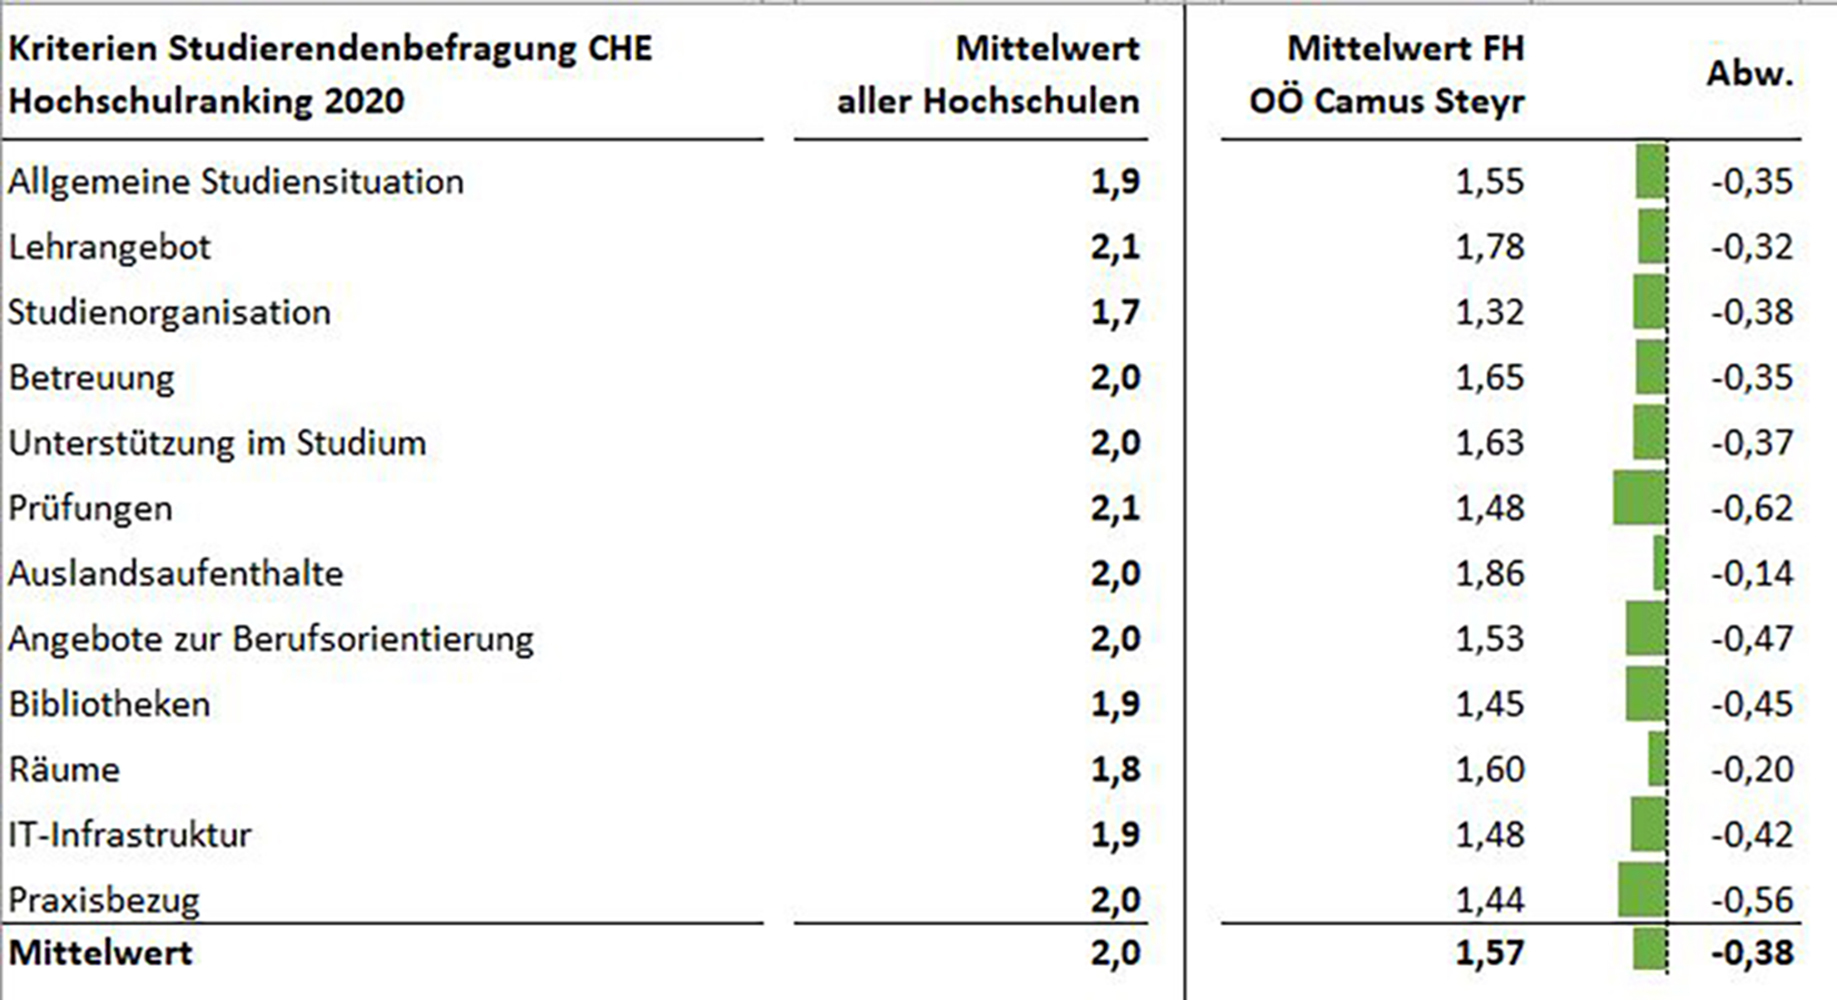 Eine tabellarische aufgestellter Vergleich zwischen dem Mittelwert aller teilnehmenden Fachhochschulen des CHE rankings und der FH Steyr